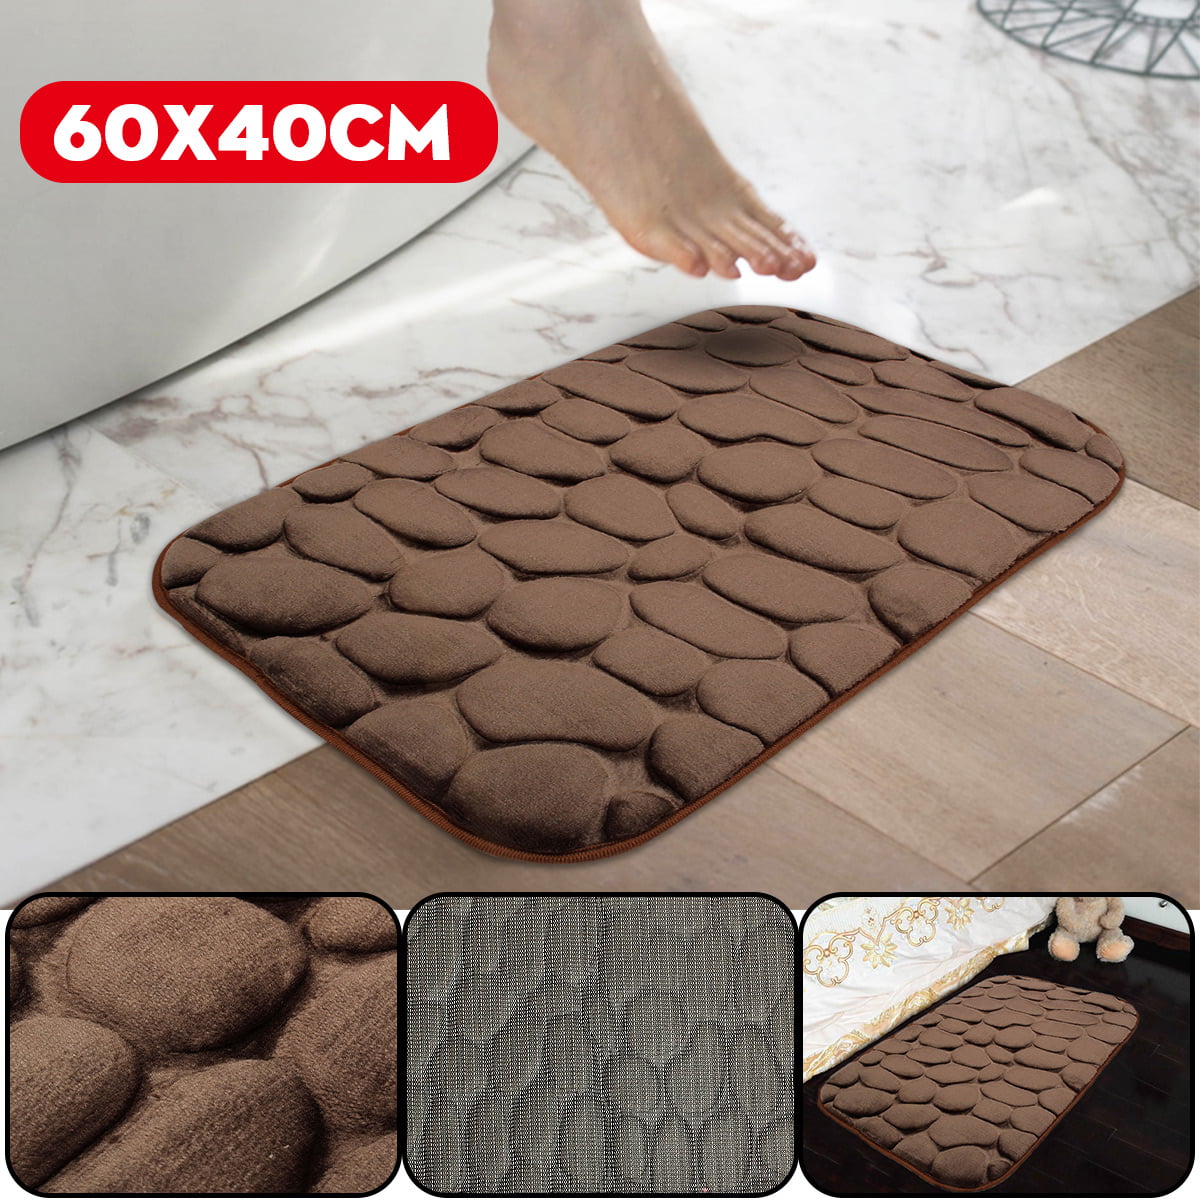 40cm*60cm Absorbent Bathroom Bedroom Floor Non-slip Mat Memory Foam Bath Rug New 